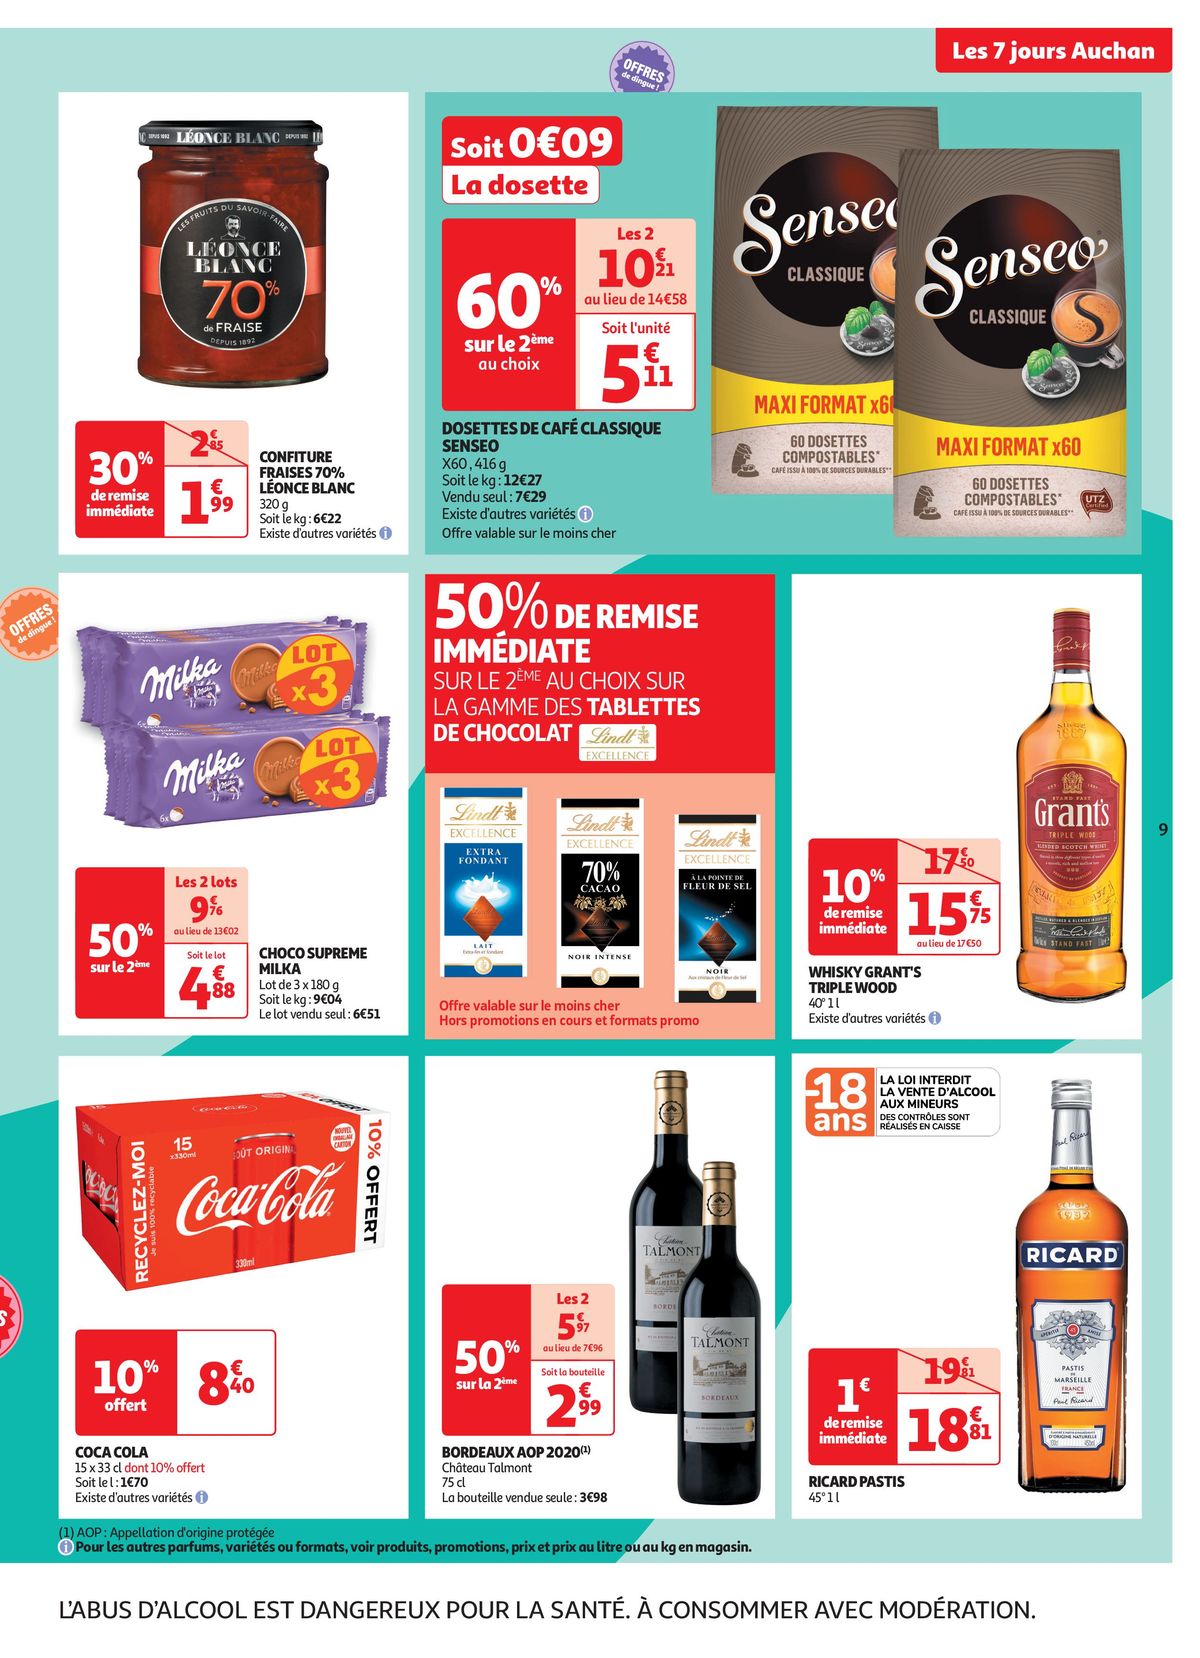 Catalogue C'est les 7 jours Auchan dans votre super !, page 00009